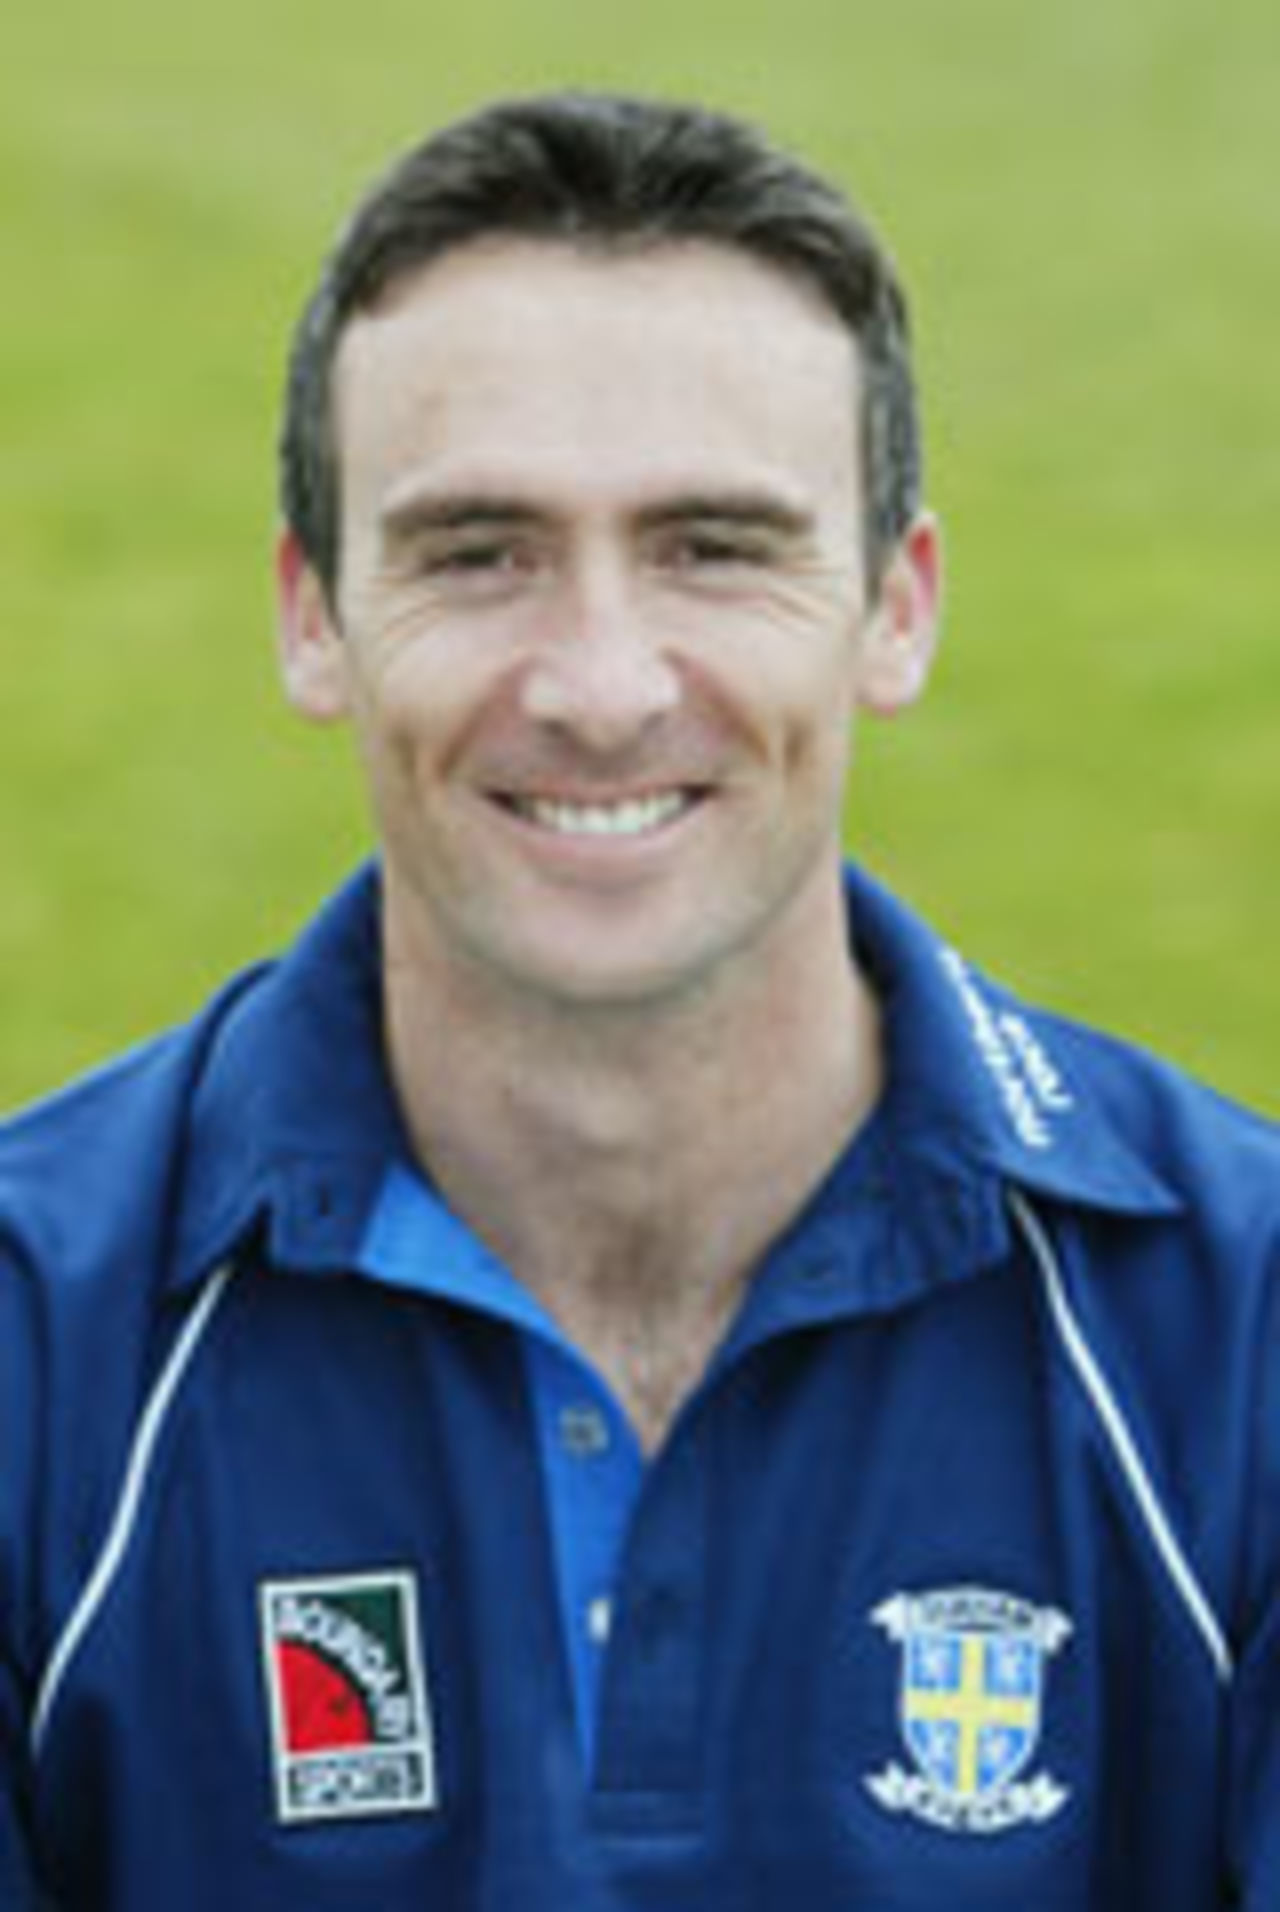 Gavin Hamilton in Durham kit, April 14 2004